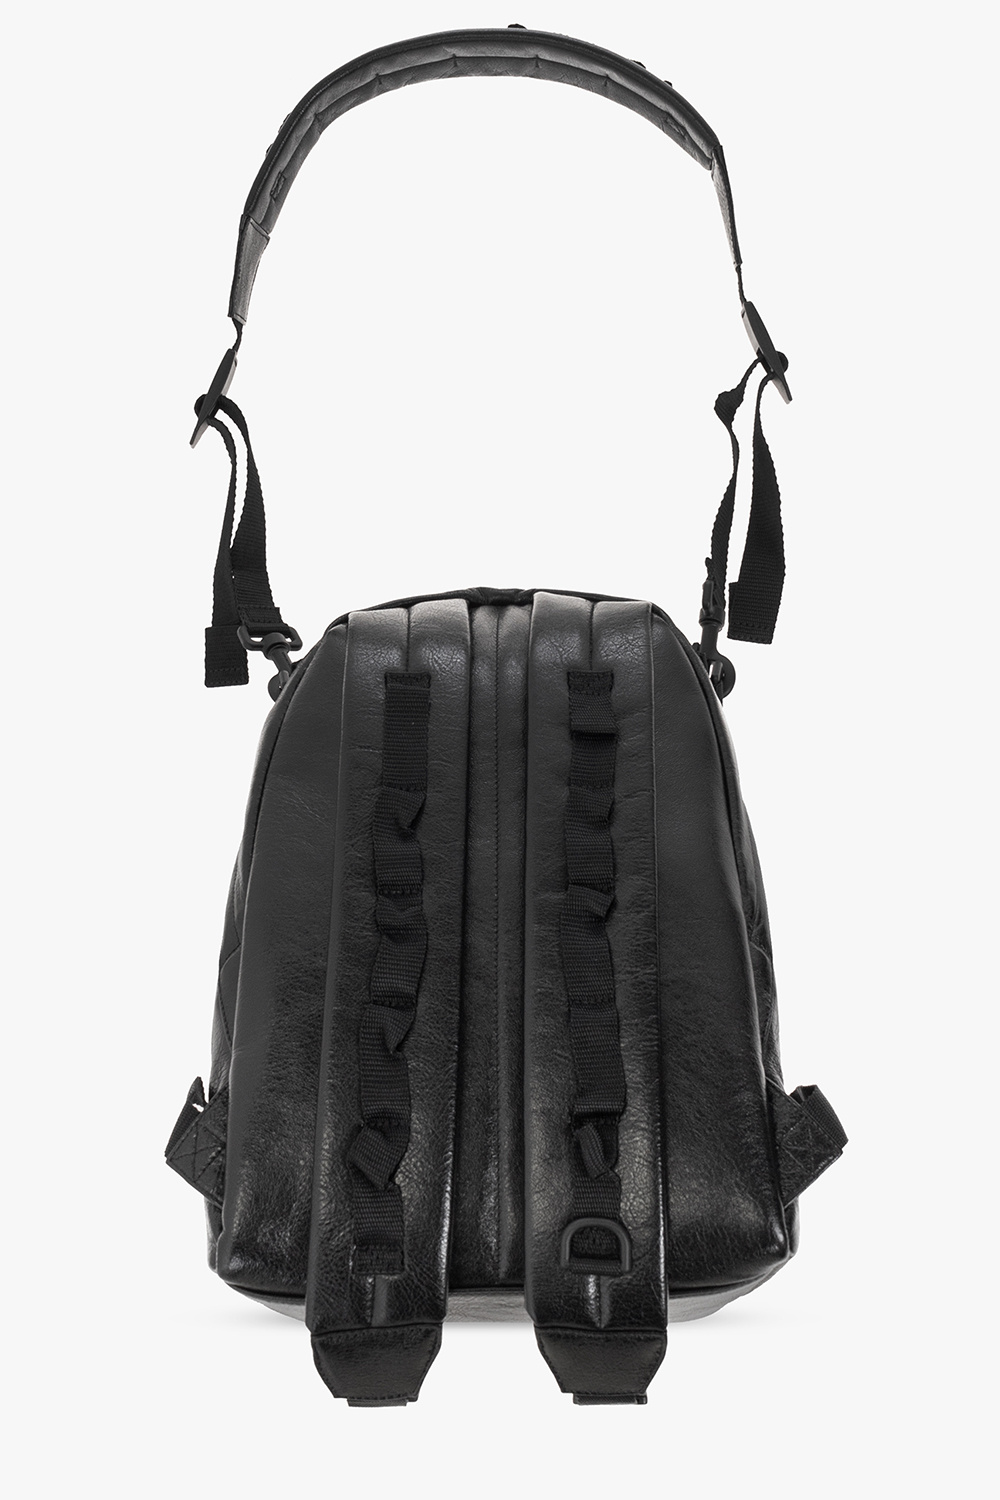 Balenciaga ‘Army Small’ BCA backpack